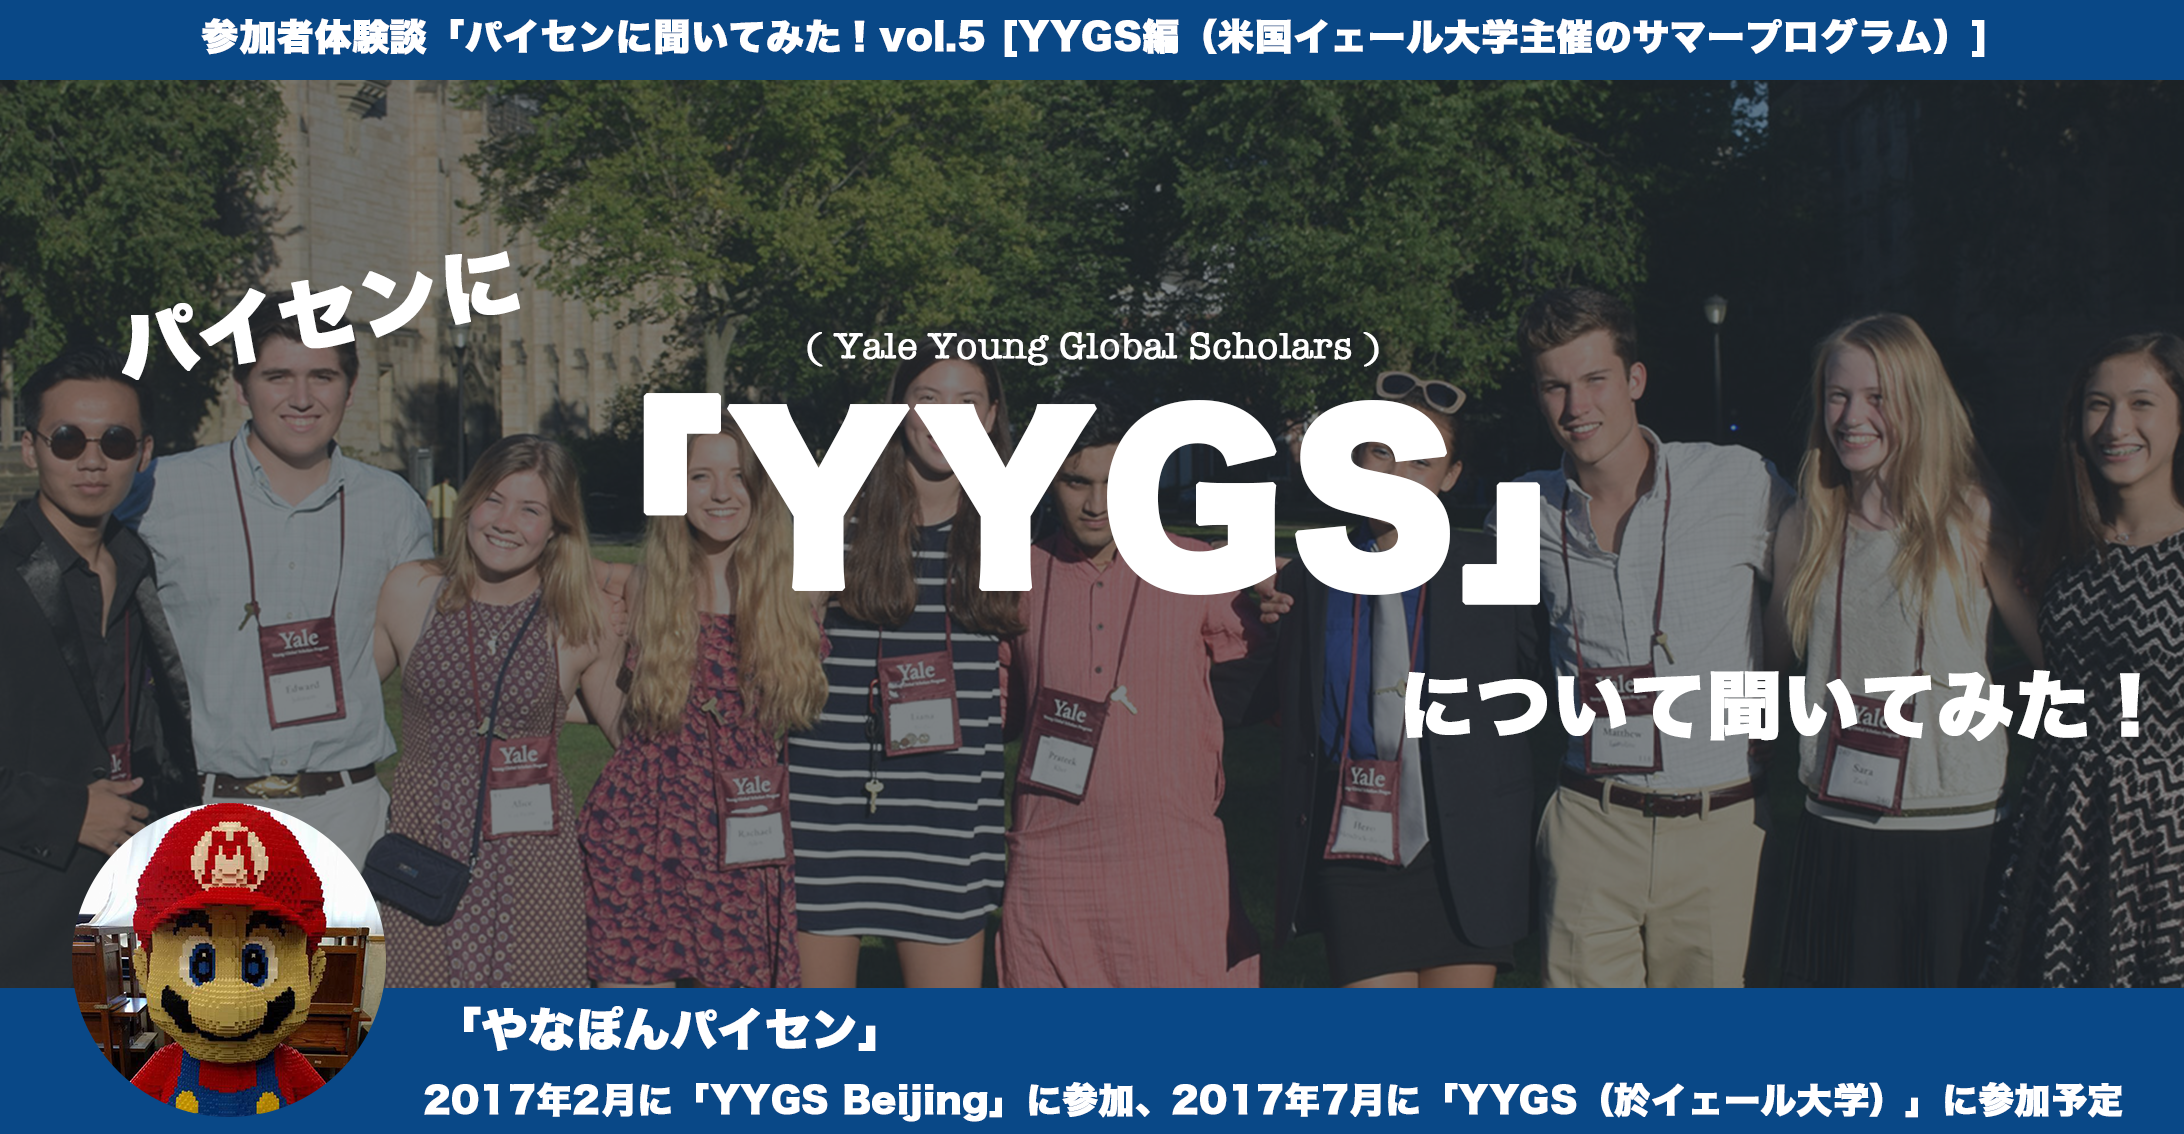 イェール大学が行う高校生向けサマープログラム「YYGS」とは？？